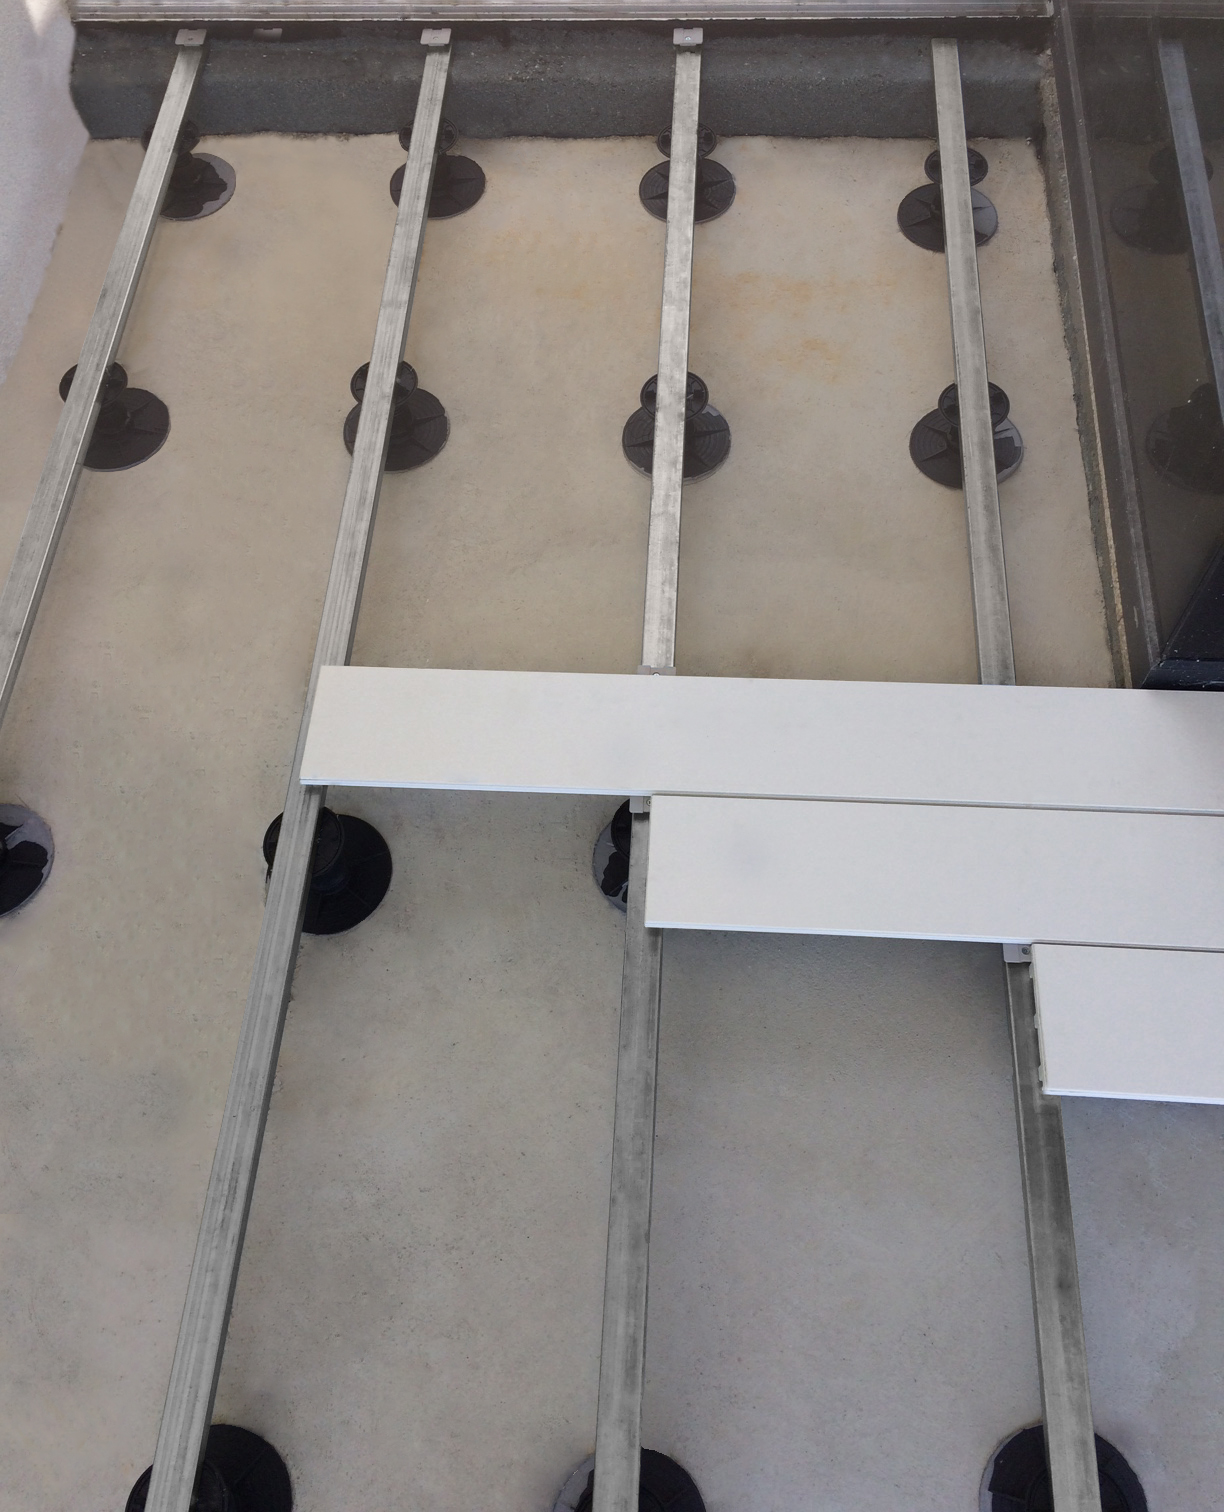 Barras galvanizadas, pedestales termoplásticos de altura variable y clips de fijación.